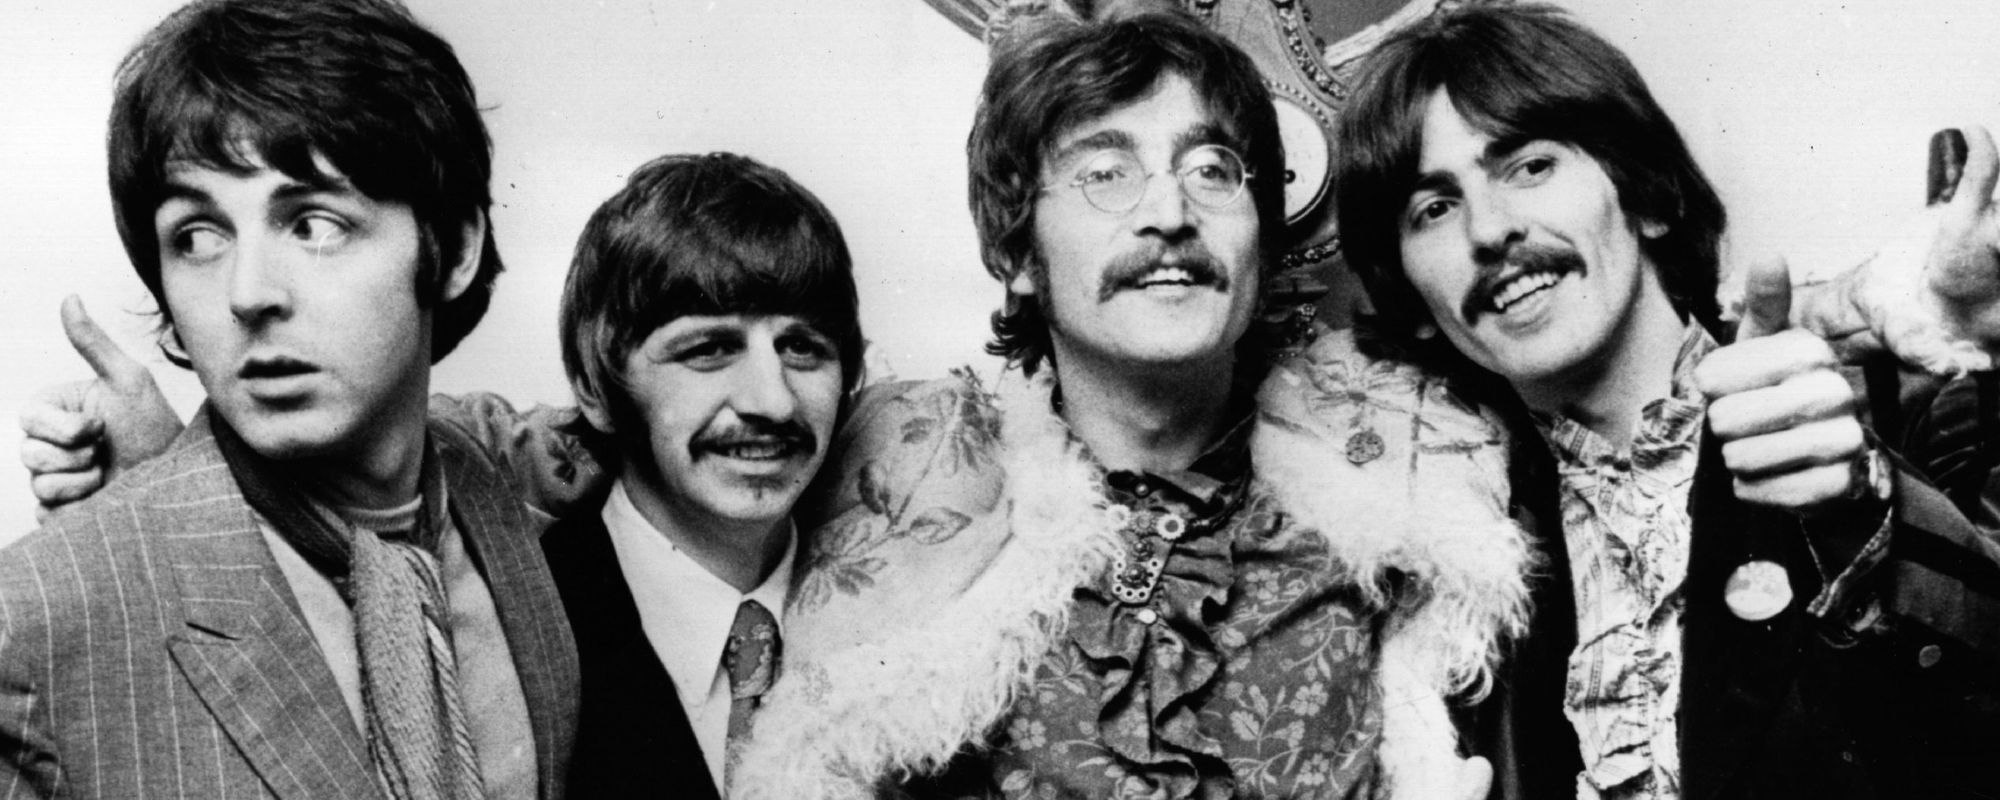 3 of the Heaviest Beatles Songs